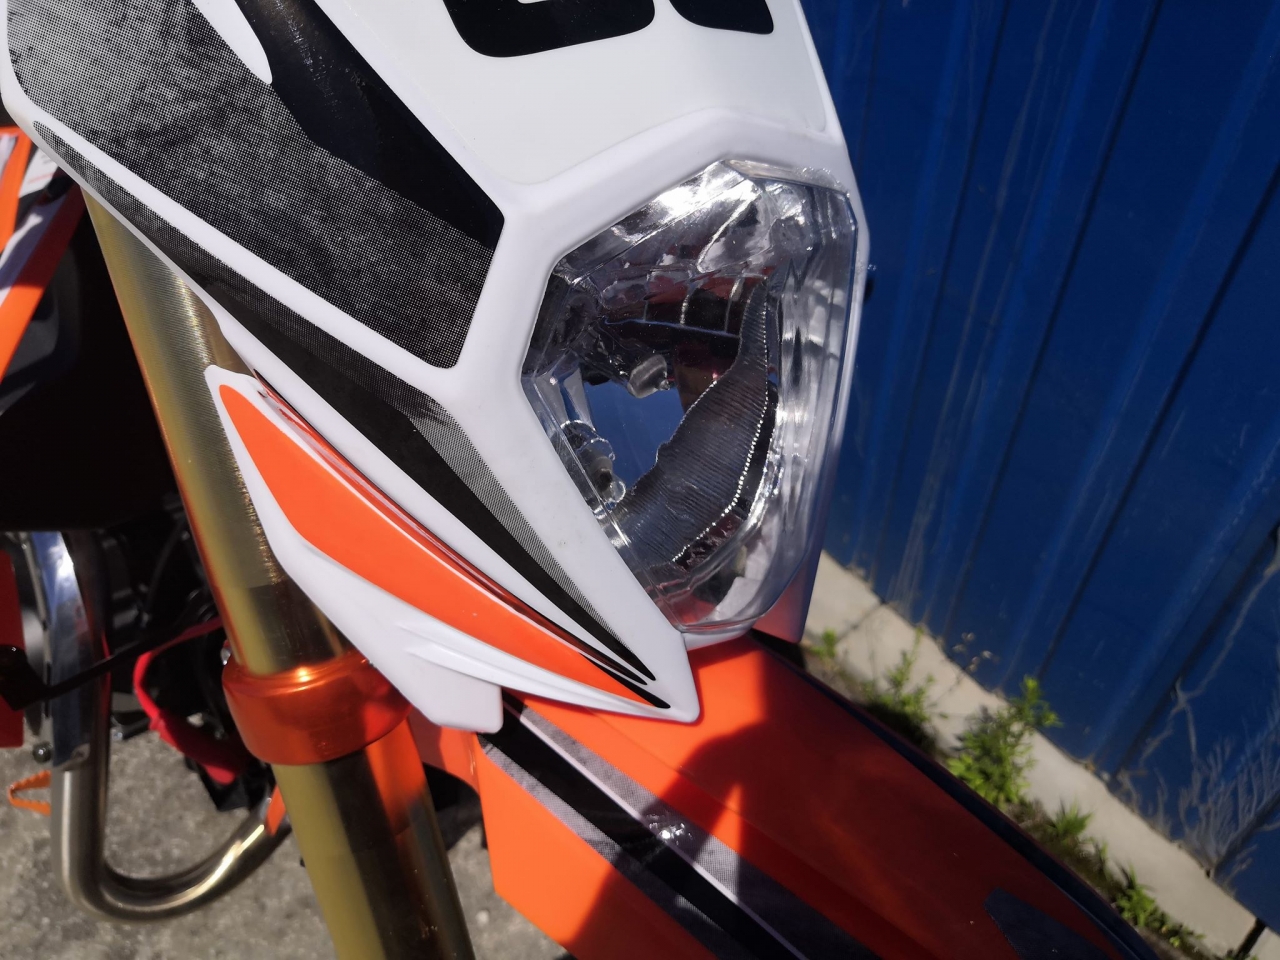 Motorcycle XMOTOS - XB66 125cc 4t 17/14 Color Orange